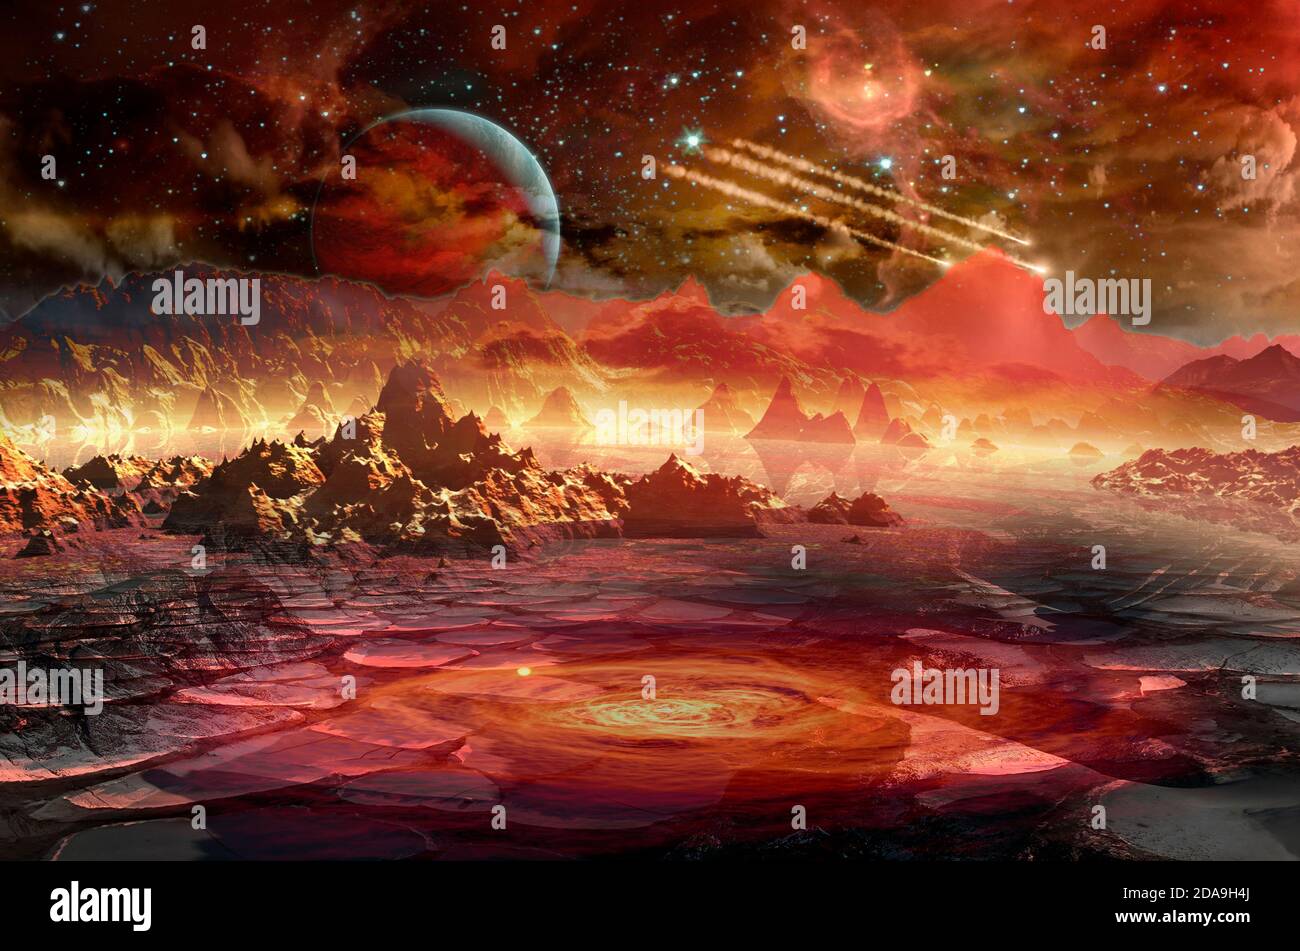 Raumschiff im Weltraum über dem roten Planeten im fernen Sonnensystem. Elemente dieses Bildes, die von der NASA eingerichtet wurden. Stockfoto